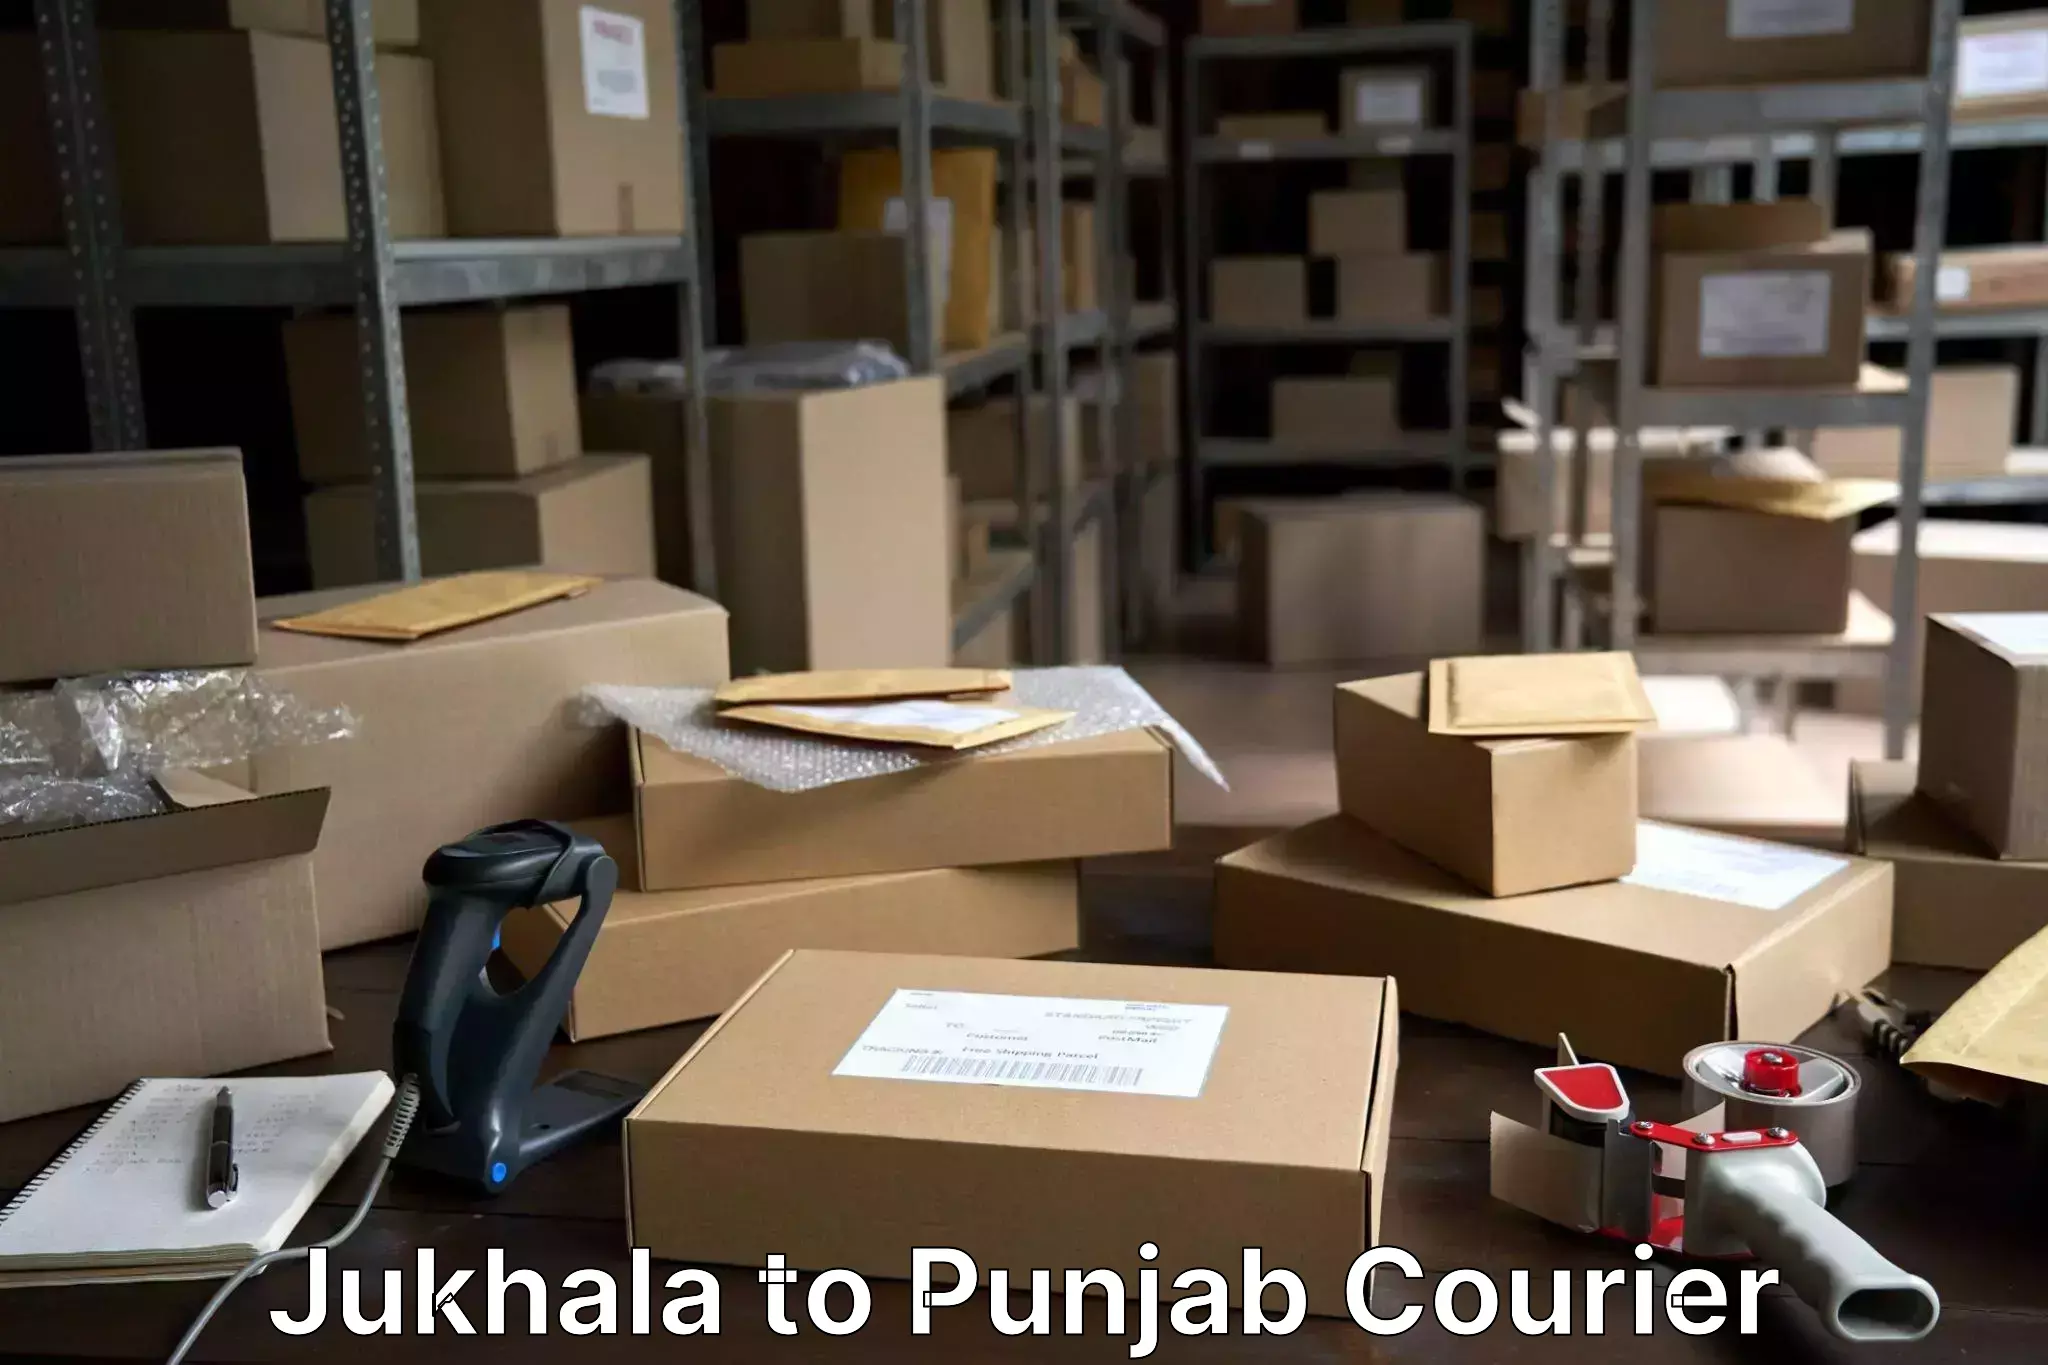 Emergency baggage service Jukhala to Punjab